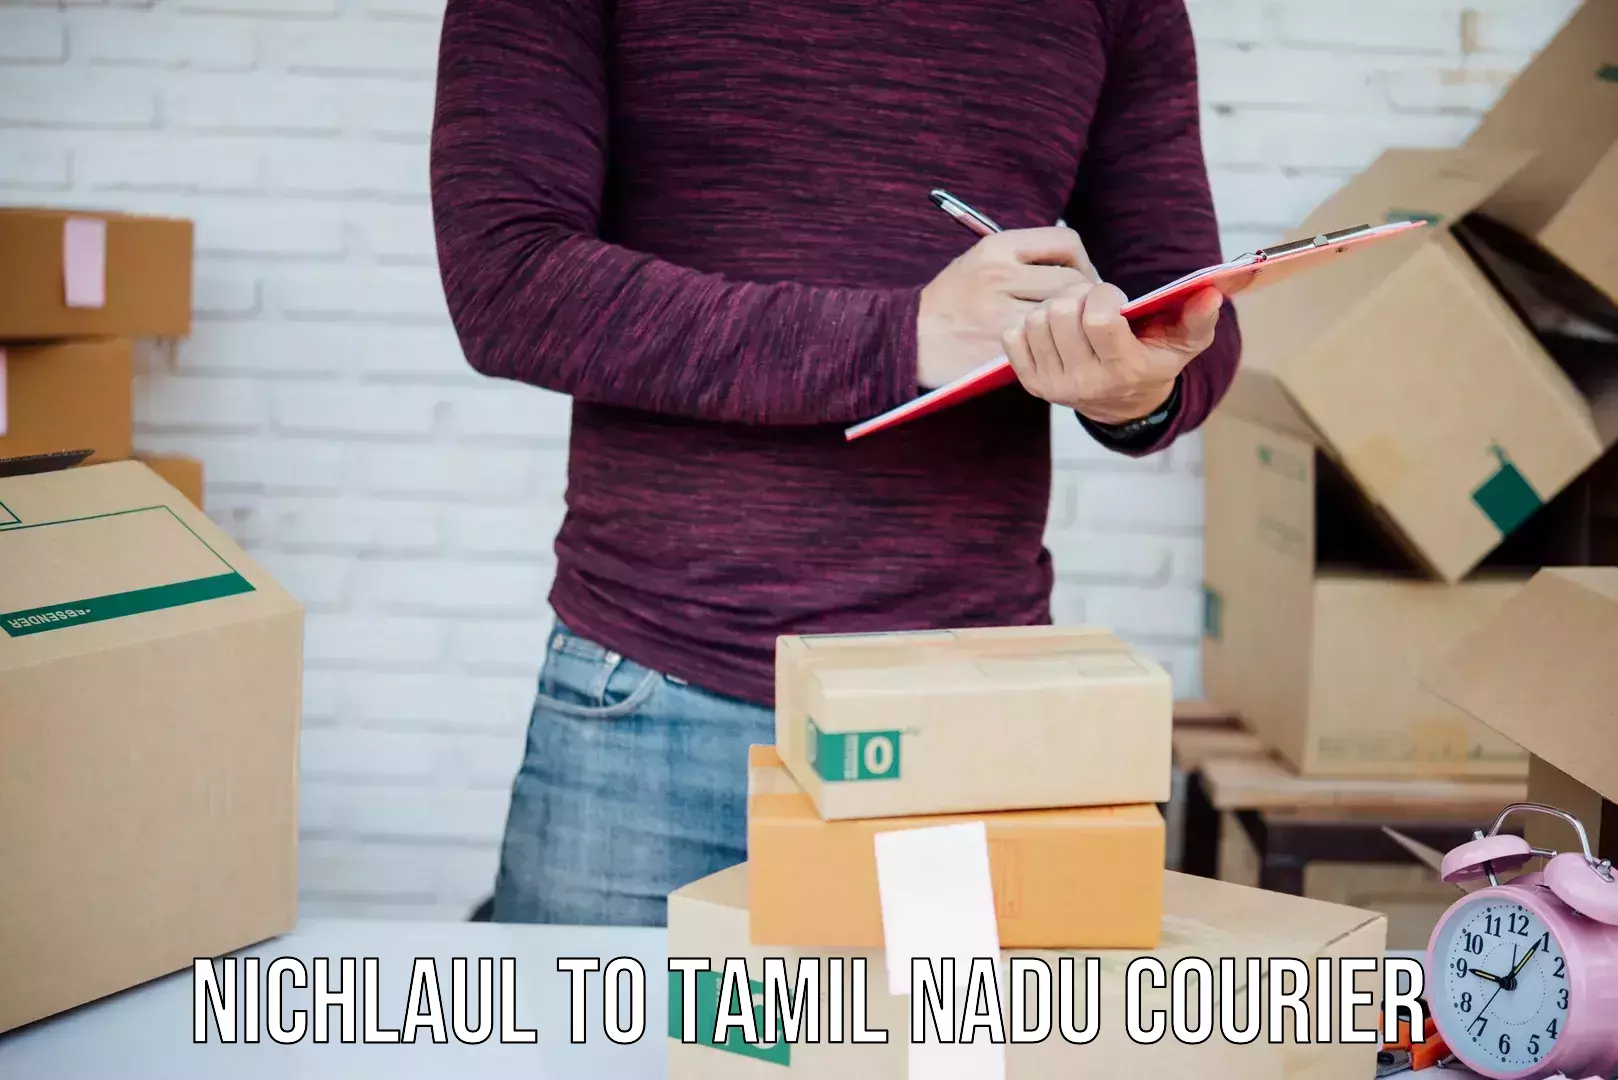 Express mail service Nichlaul to Periyakulam